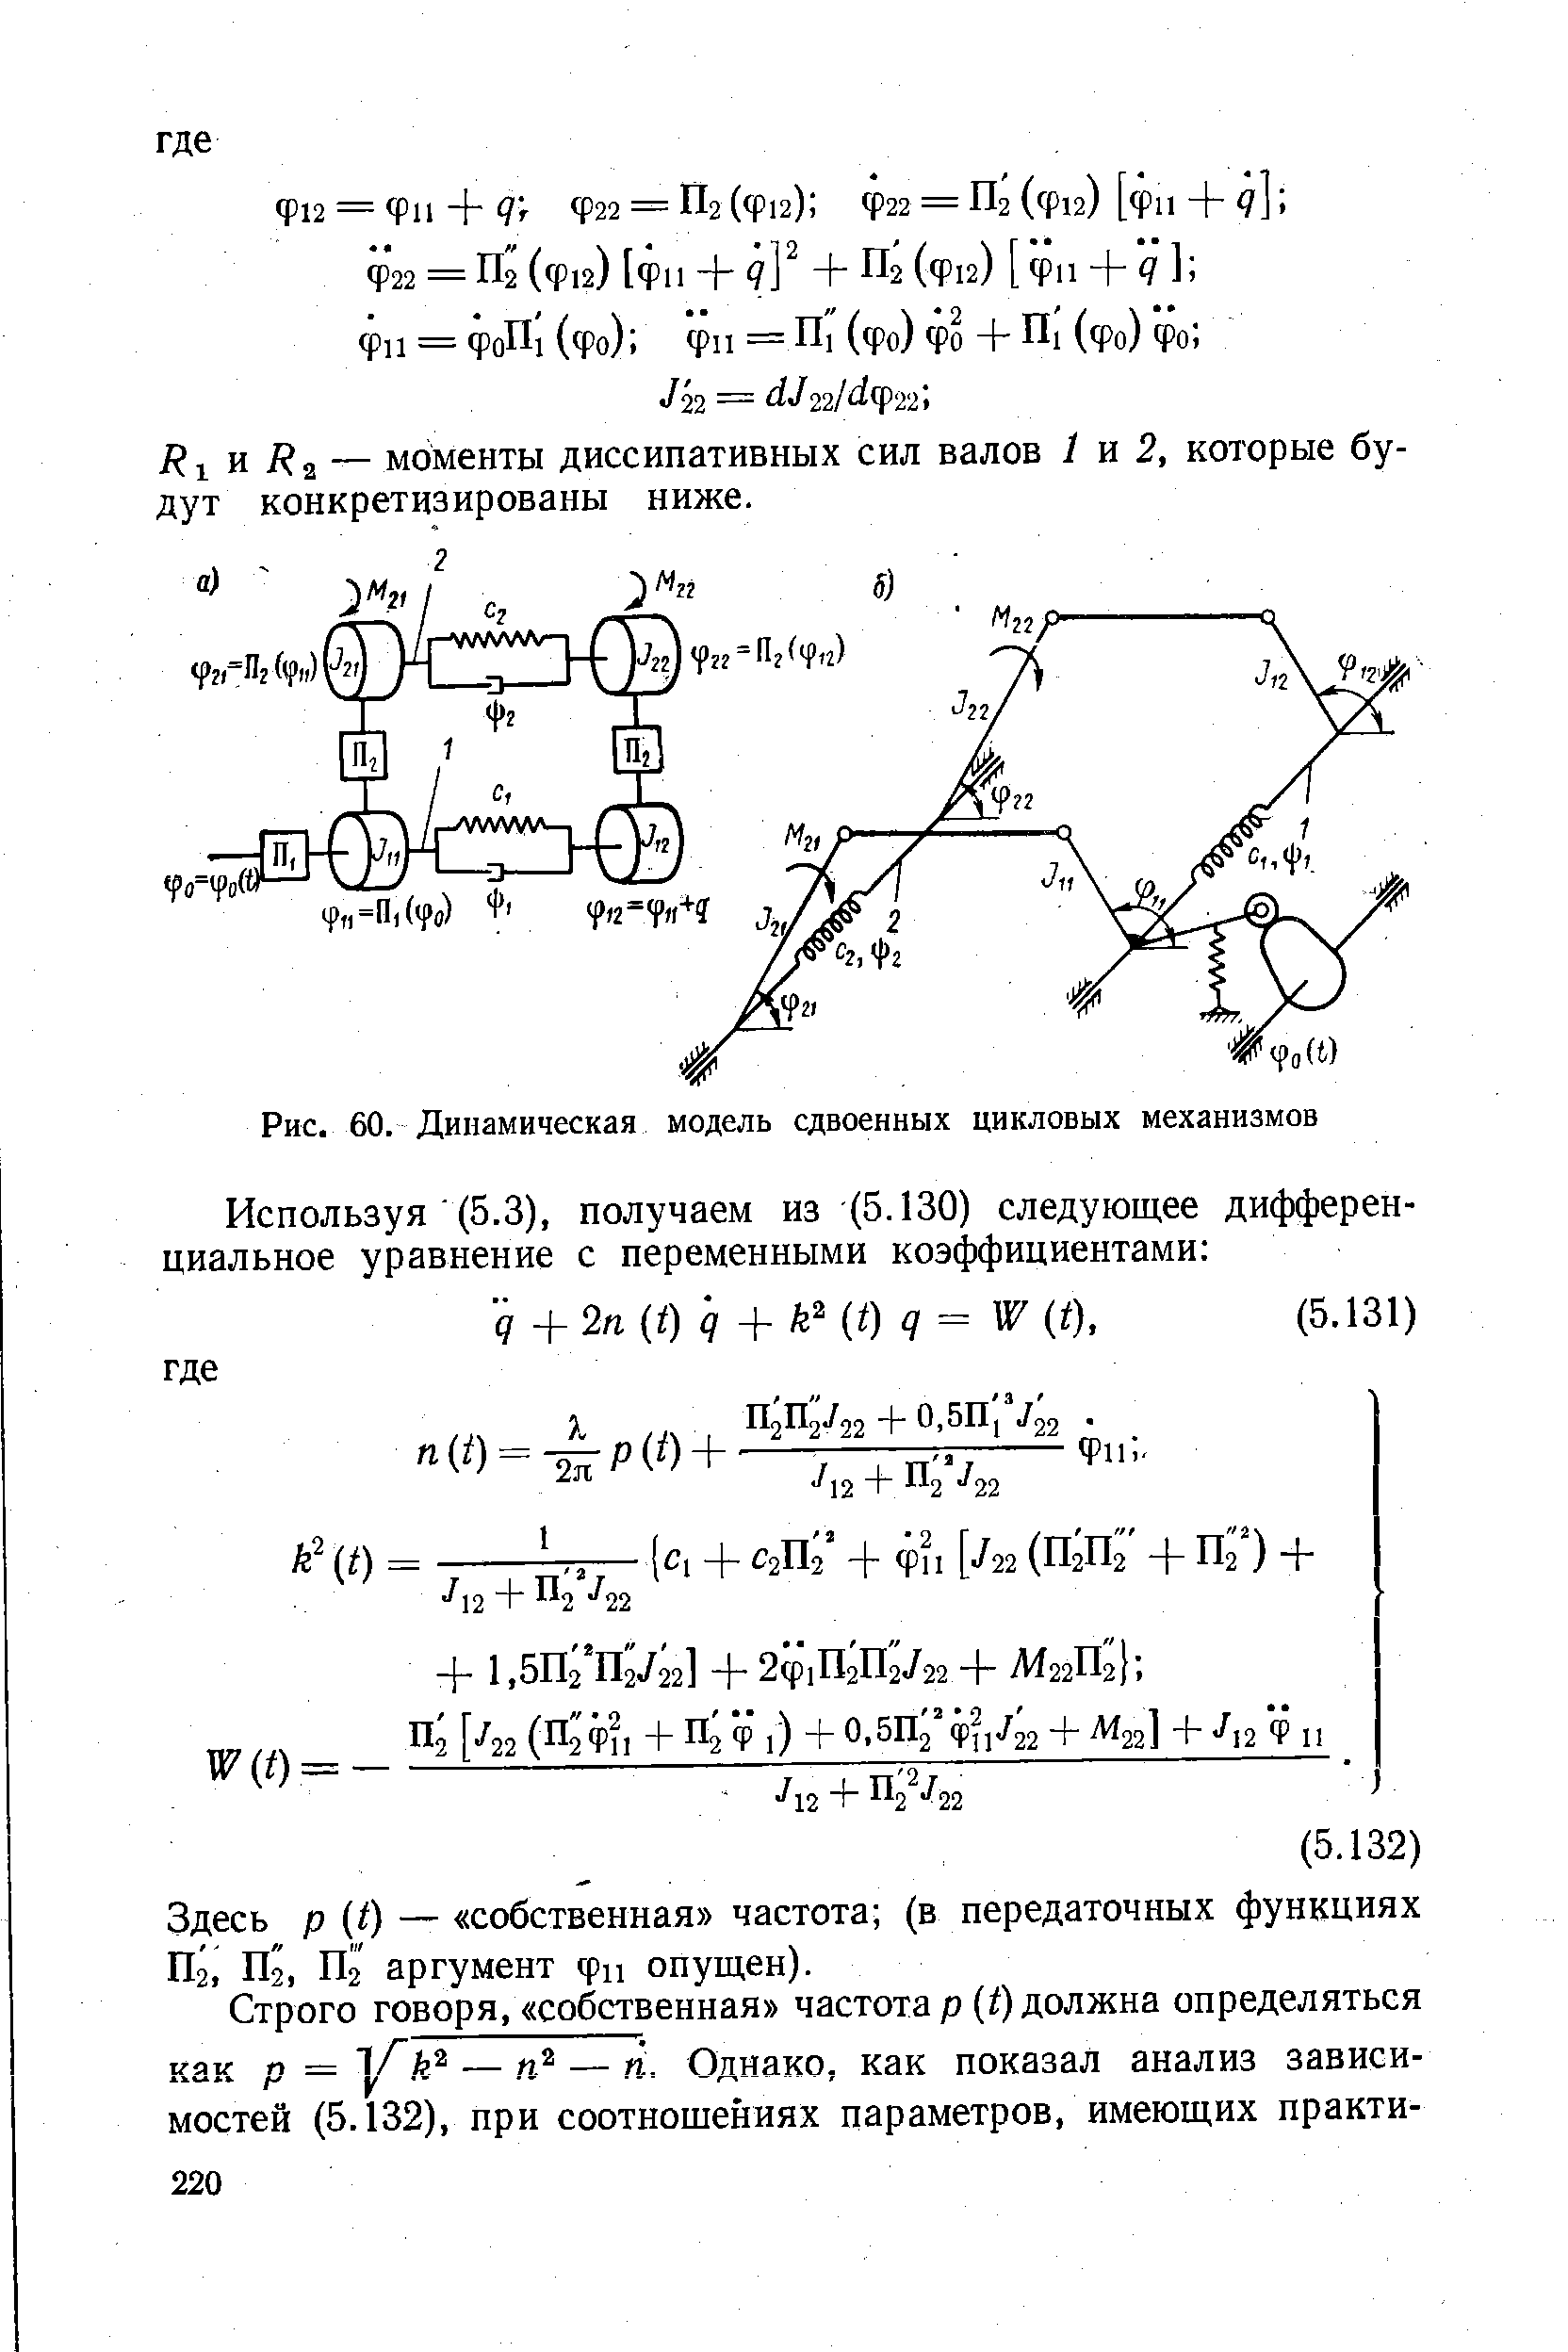 Рис. 60. Динамическая модель сдвоенных цикловых механизмов
